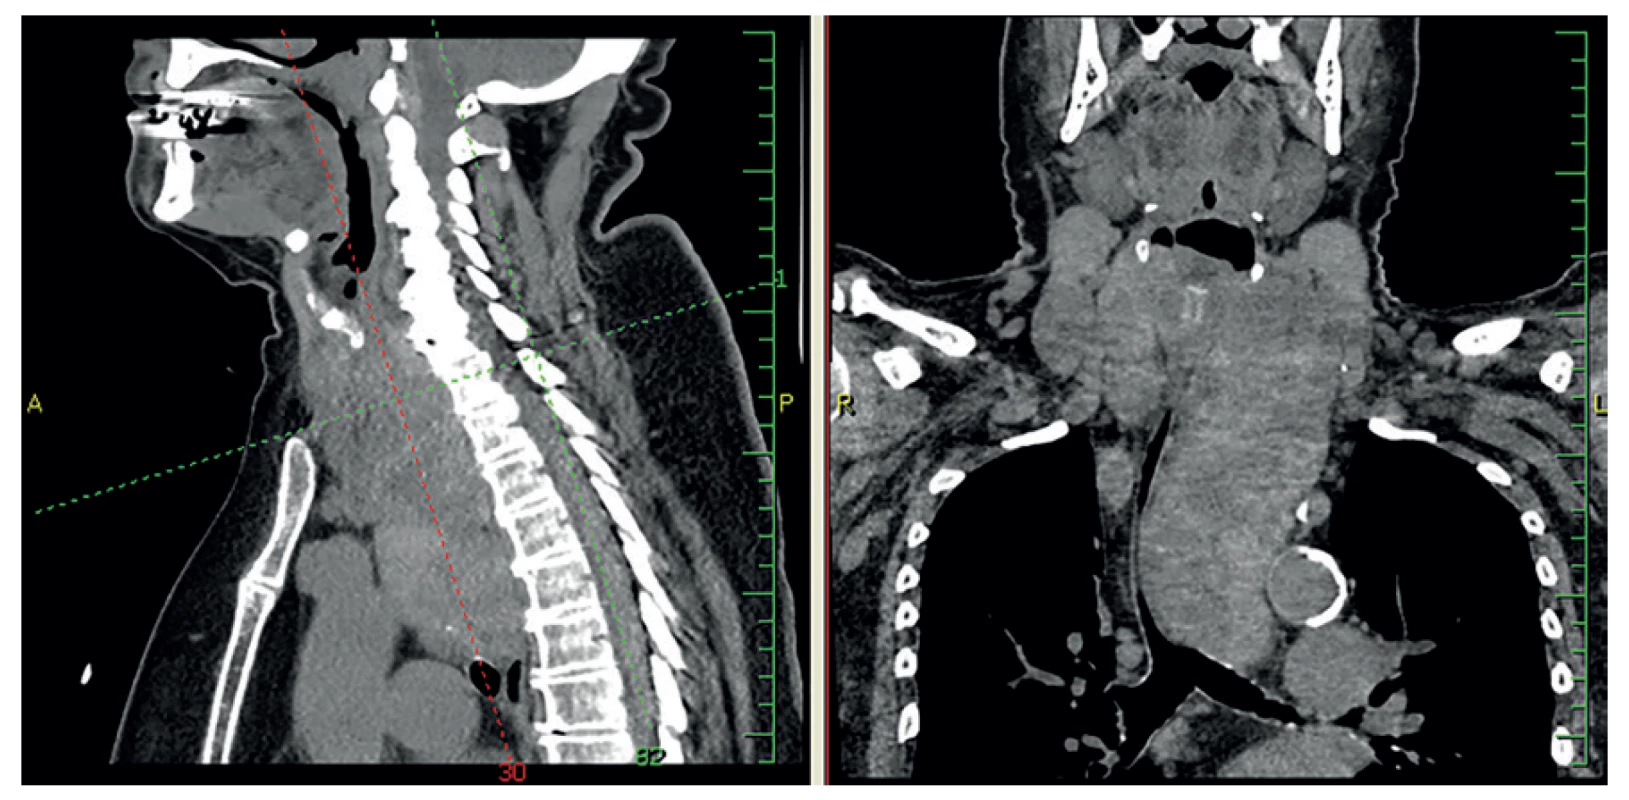 Retrosternální struma pod oblouk aorty až k bifurkaci trachey<br>
Fig. 1: Retrosternal goiter below the aortic arch, up to the tracheal bifurcation